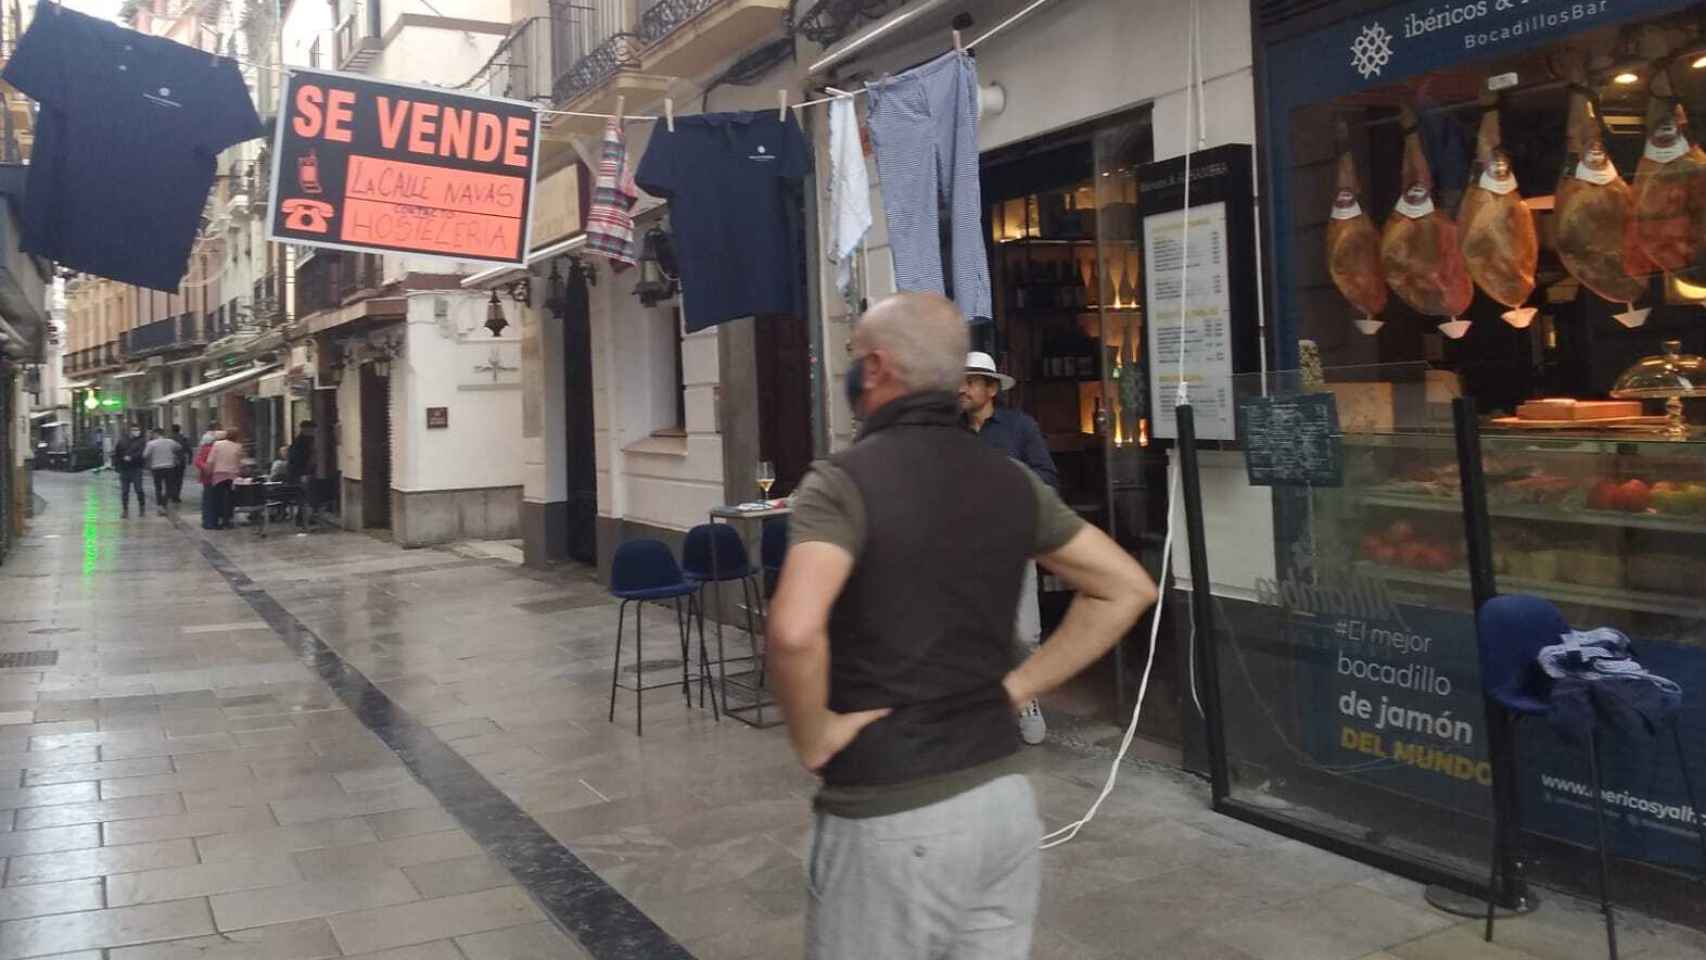 Nicolás Chica, propietario del bar Ibéricos y Alhambra, comprobando que está bien puesto el cartel de 'se vende la calle Navas de Granada'.